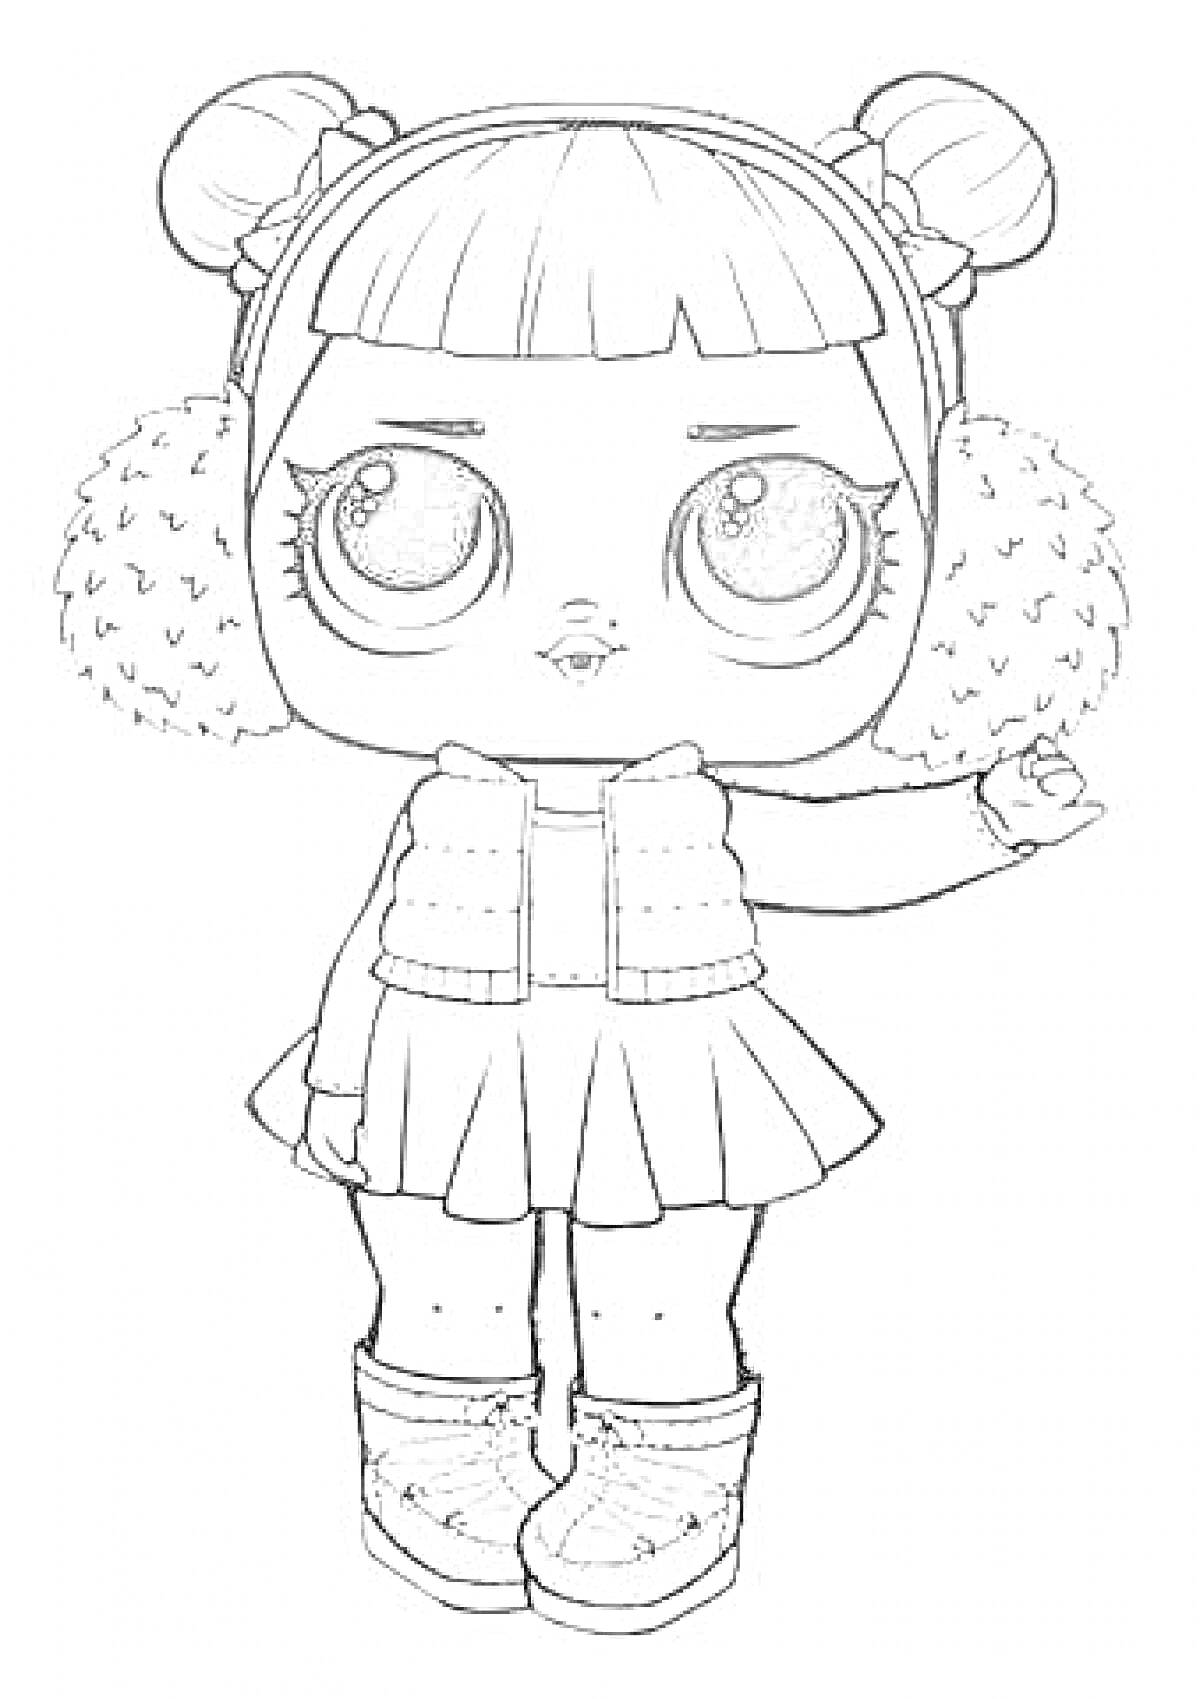 Кукла Лол в тёплой одежде с пушистыми наушниками, вязаной жилеткой и ботинками